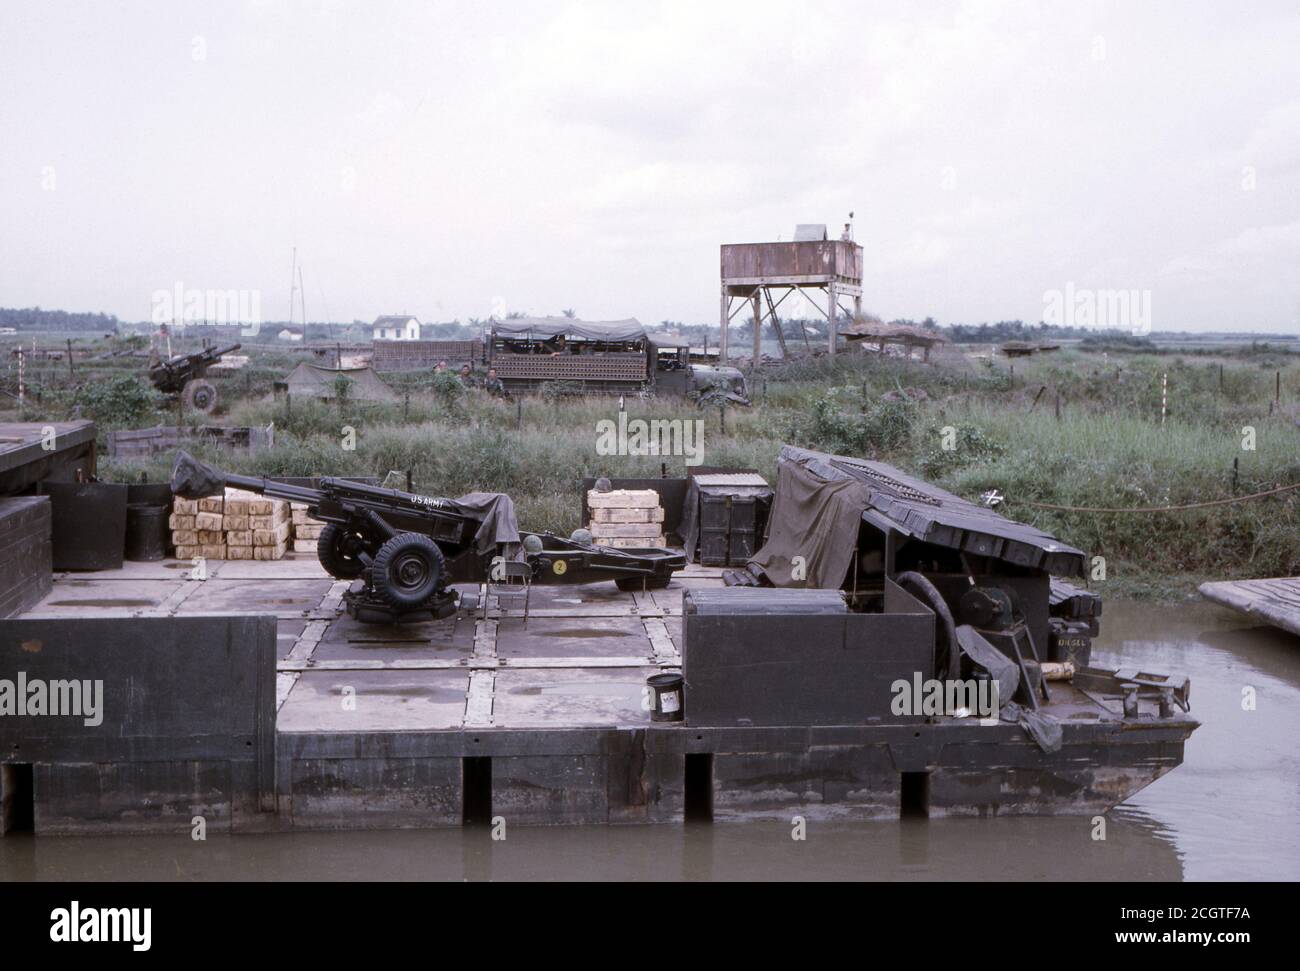 Vietnamkrieg US ARMY / United States Army Leichte Feldhaubitze M102 105 mm - Vietnam War Aritillery Barge Leight Howitzer M102 105mm / 4.1 Inch Stock Photo